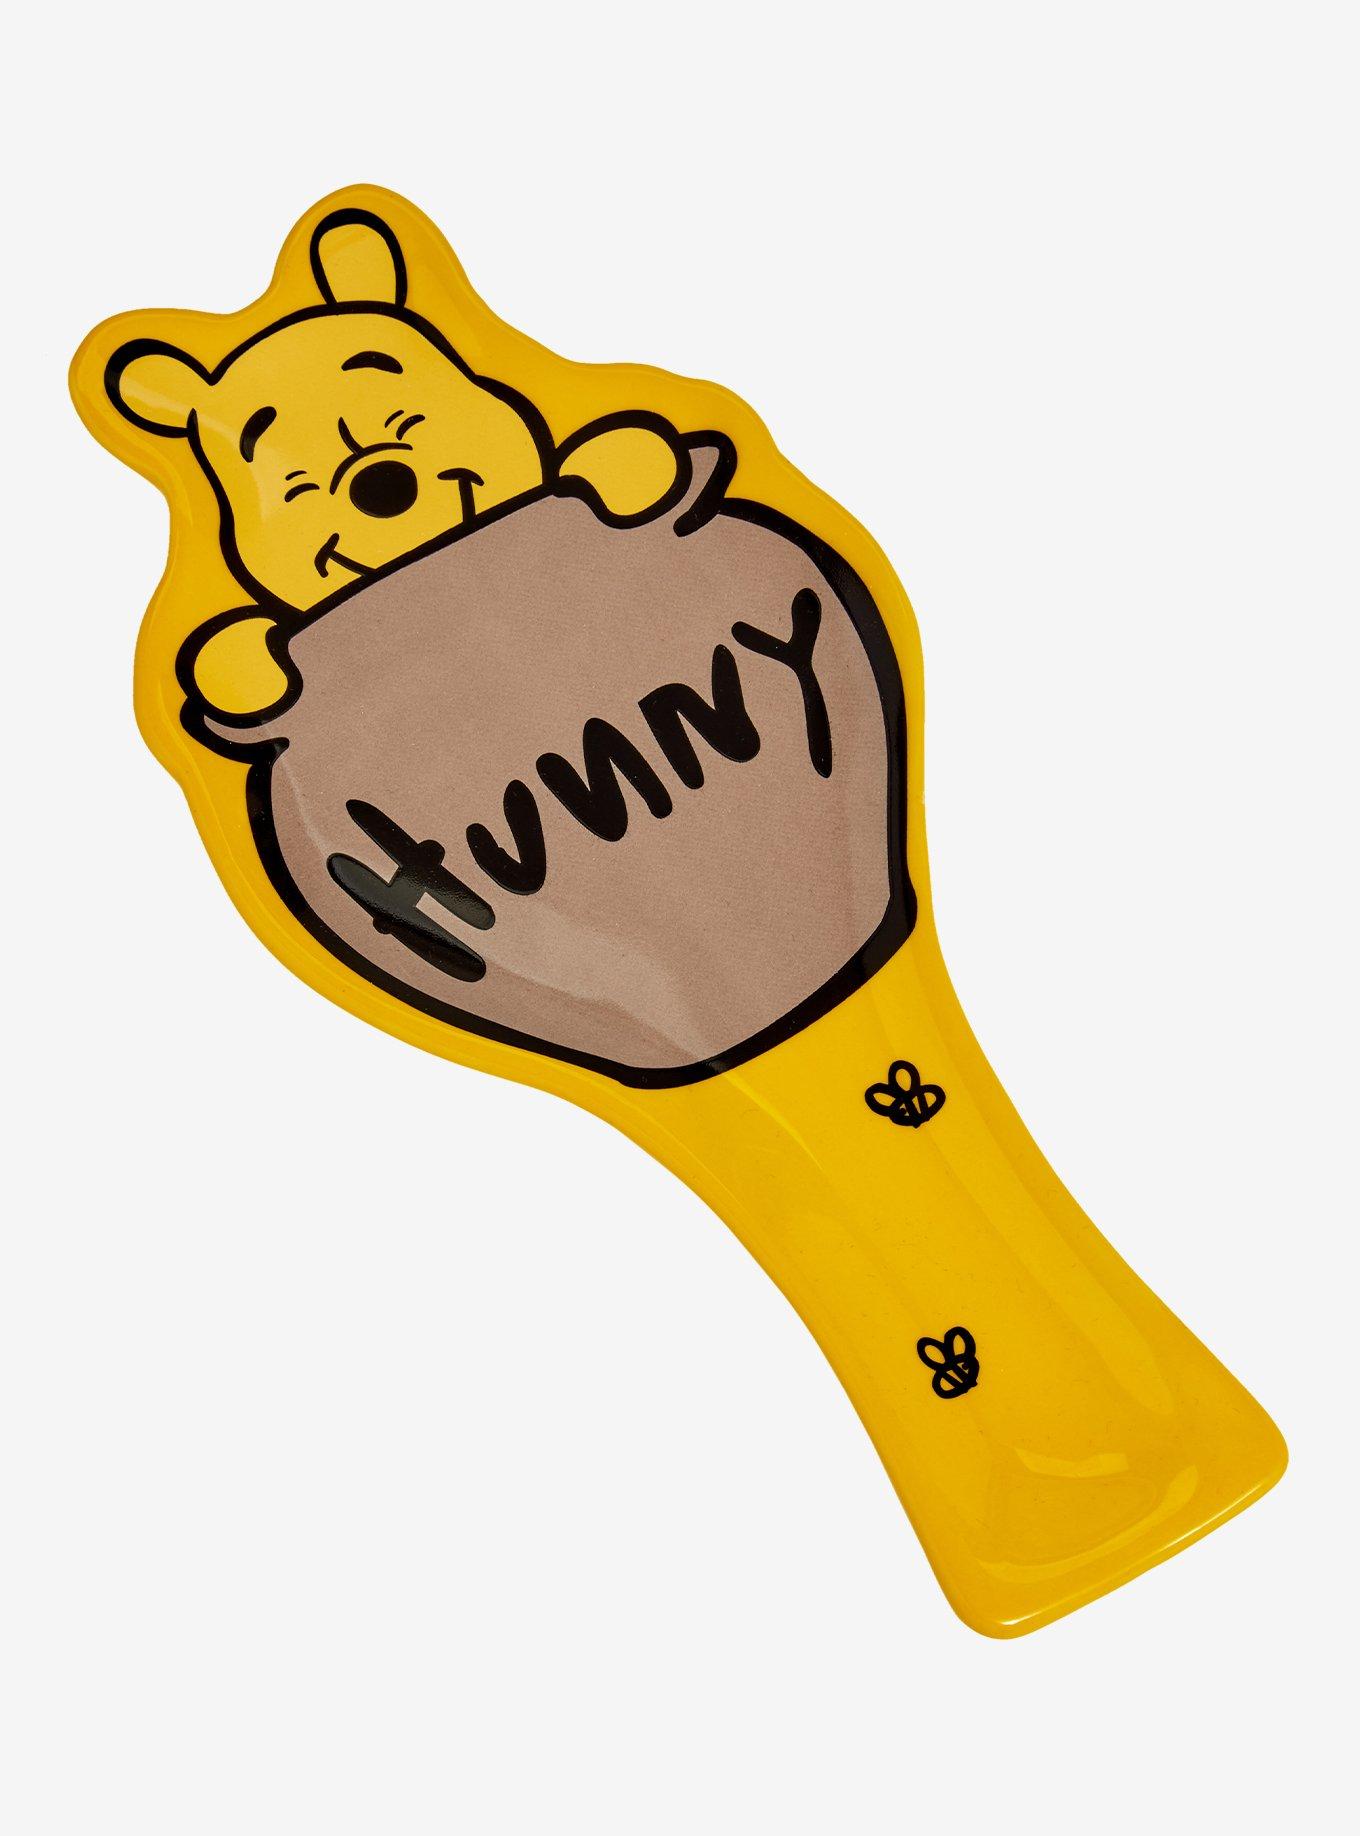 Disney Winnie the Pooh Figural Hunny Pot Spoon Rest, , hi-res